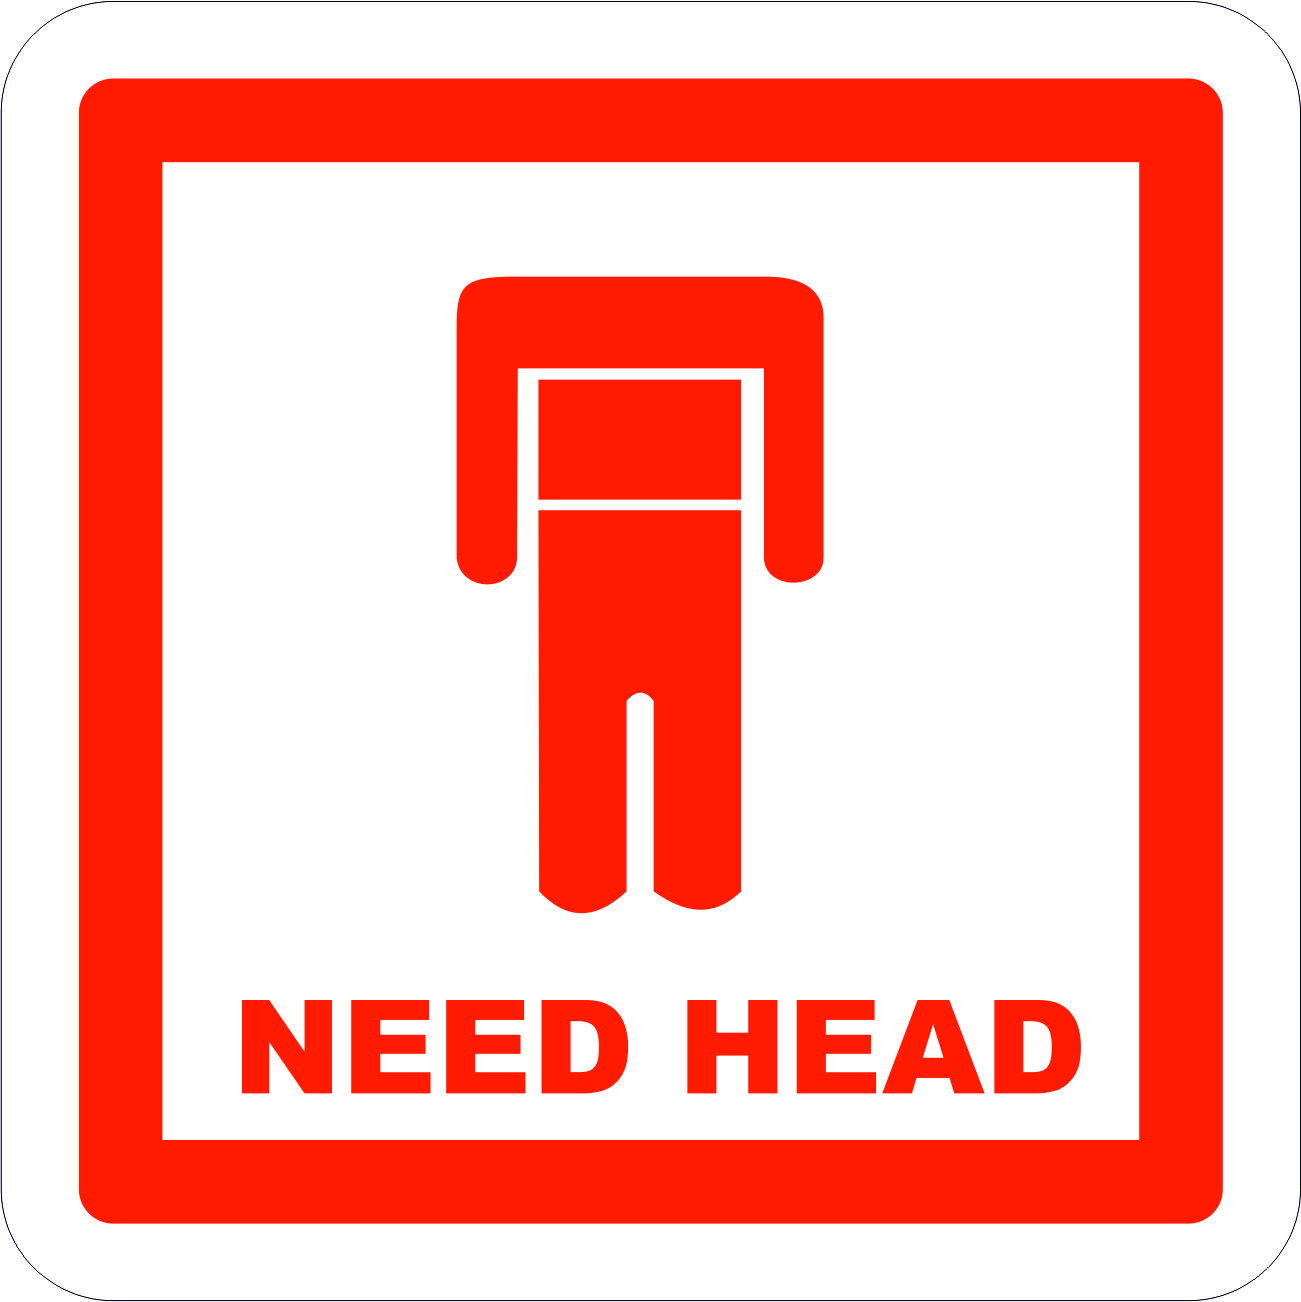 Do you need head. Наклейки на авто хед. I need heads. Наклейка стиль езды. Need head funny Sticker.